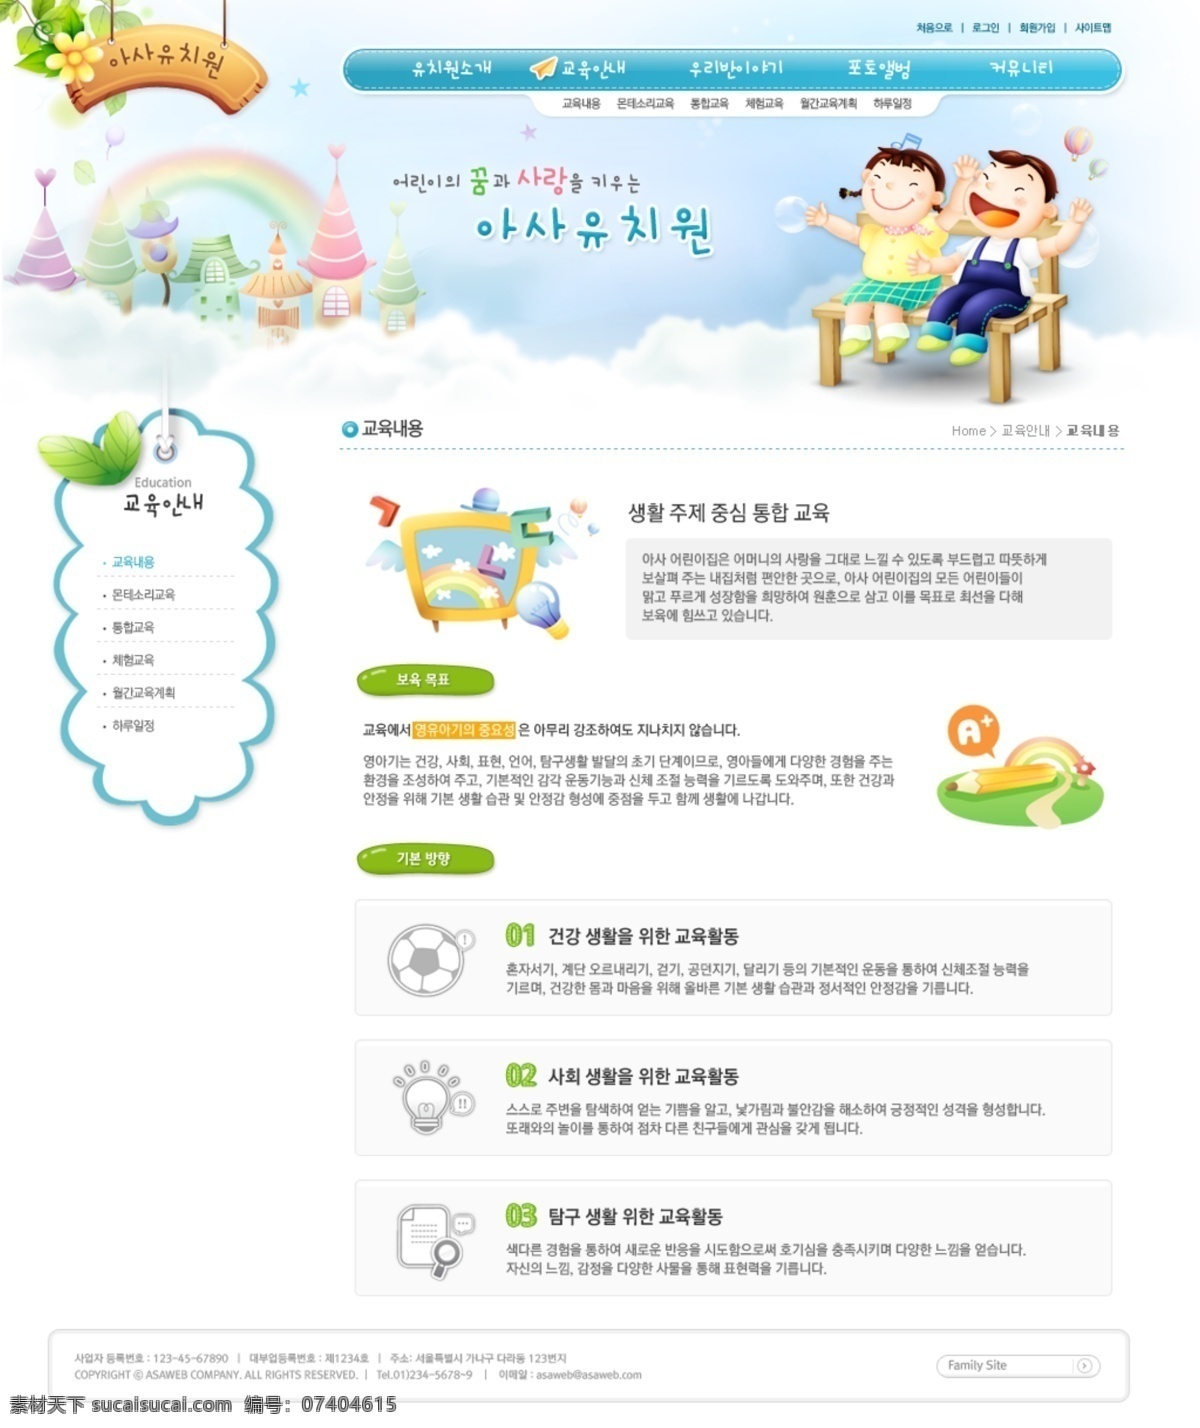 蓝色 幼儿教育 网站 界面 psd模板 儿童网站 教育网站 网站界面 网站模板 网站设计 web模板 web 界面设计 韩文模板 网页素材 其他网页素材